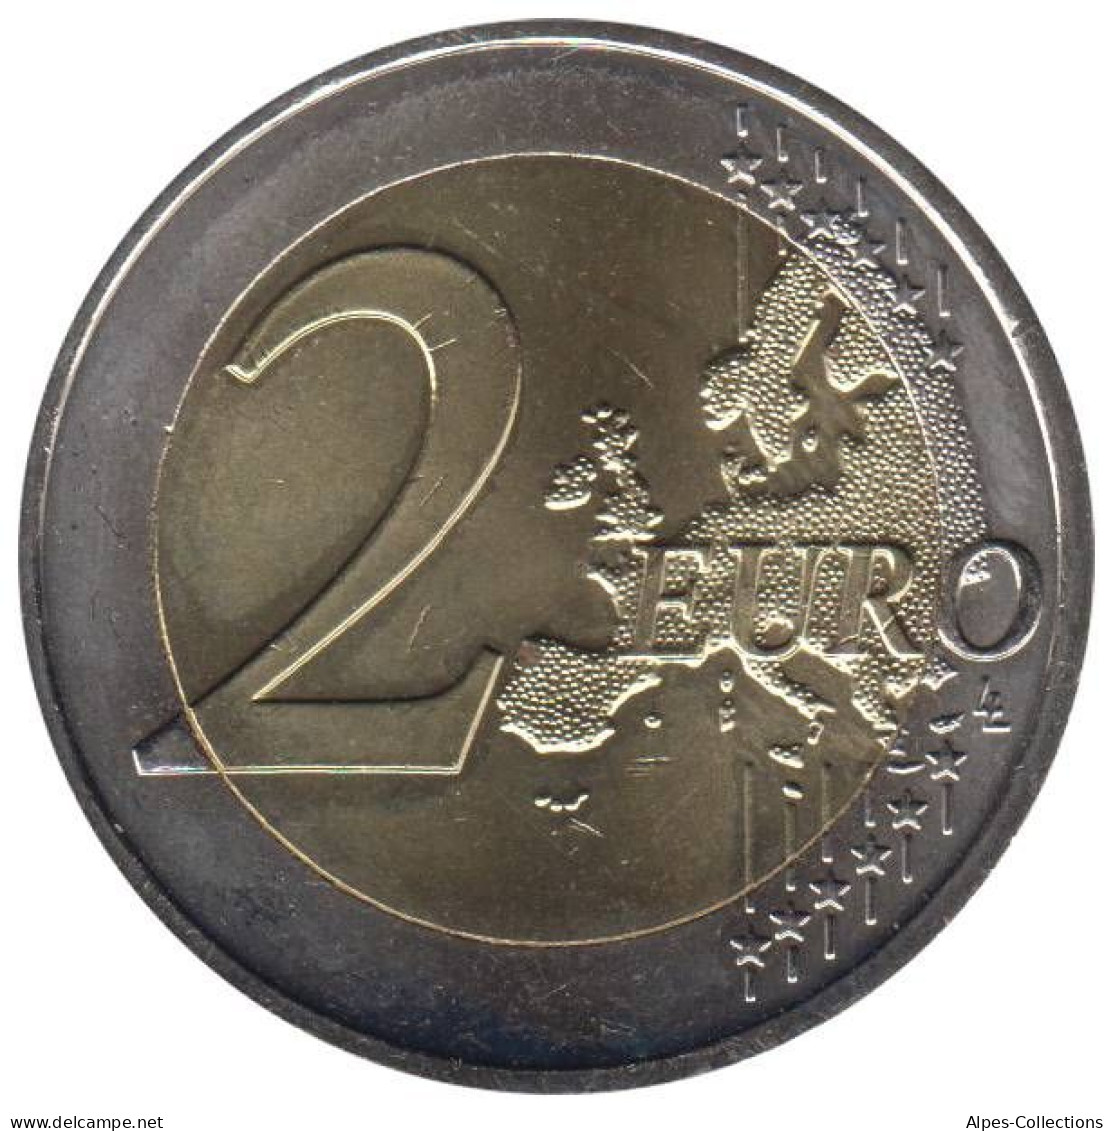 AU20009.1 - AUTRICHE - 2 Euros Commémo. 10 Ans De L'UEM - 2009 - Oostenrijk